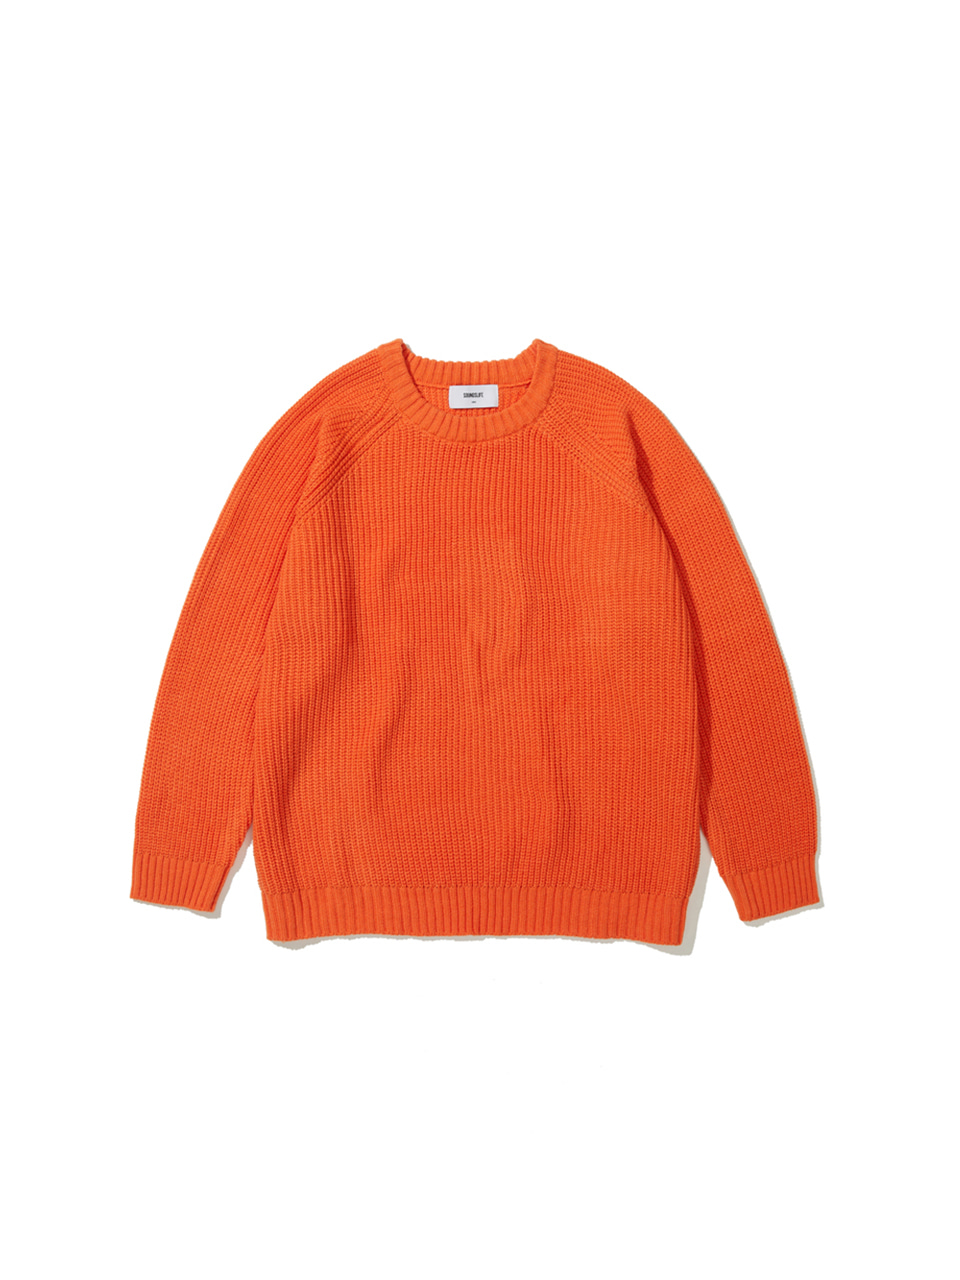 SOUNDSLIFE - Solid Knit Sweater Orange